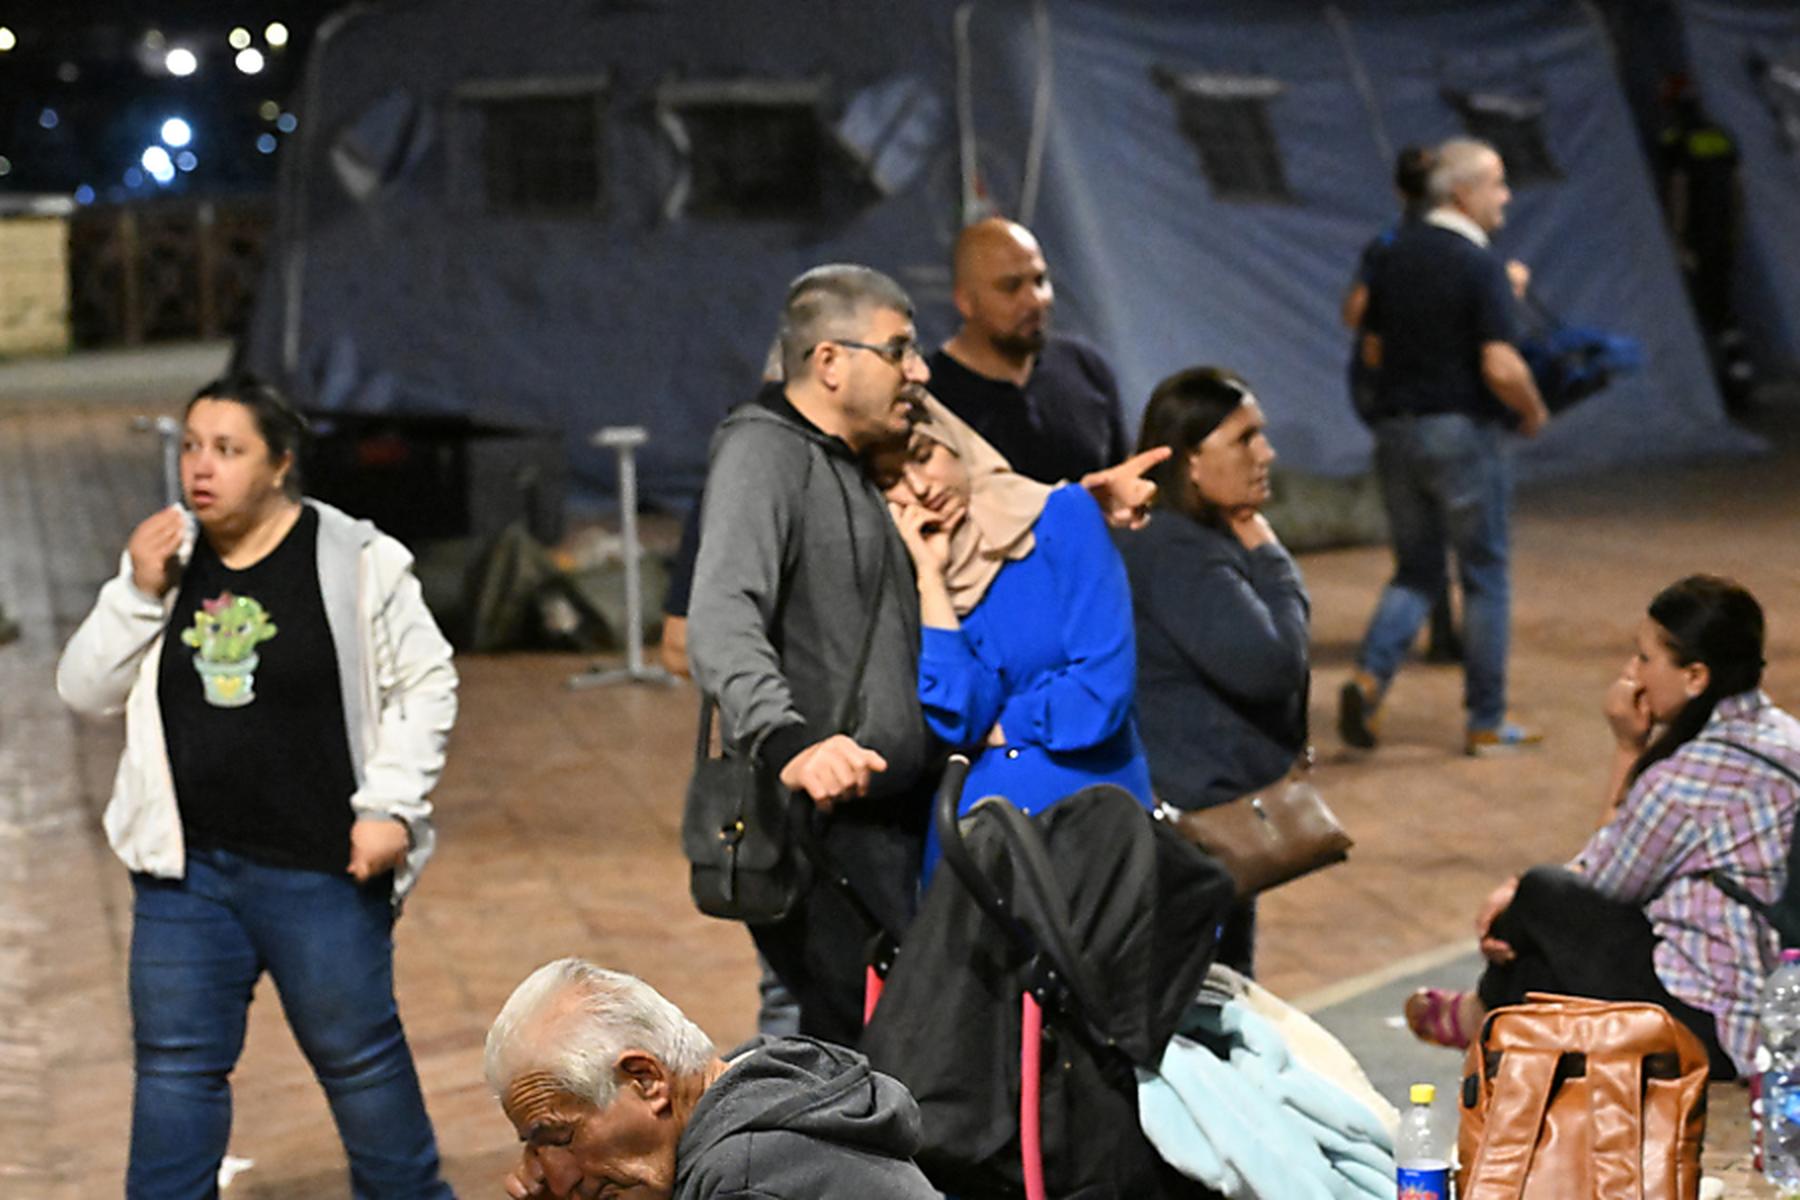 Neapel: 39 Haushalte wegen Erdbeben bei Neapel evakuiert